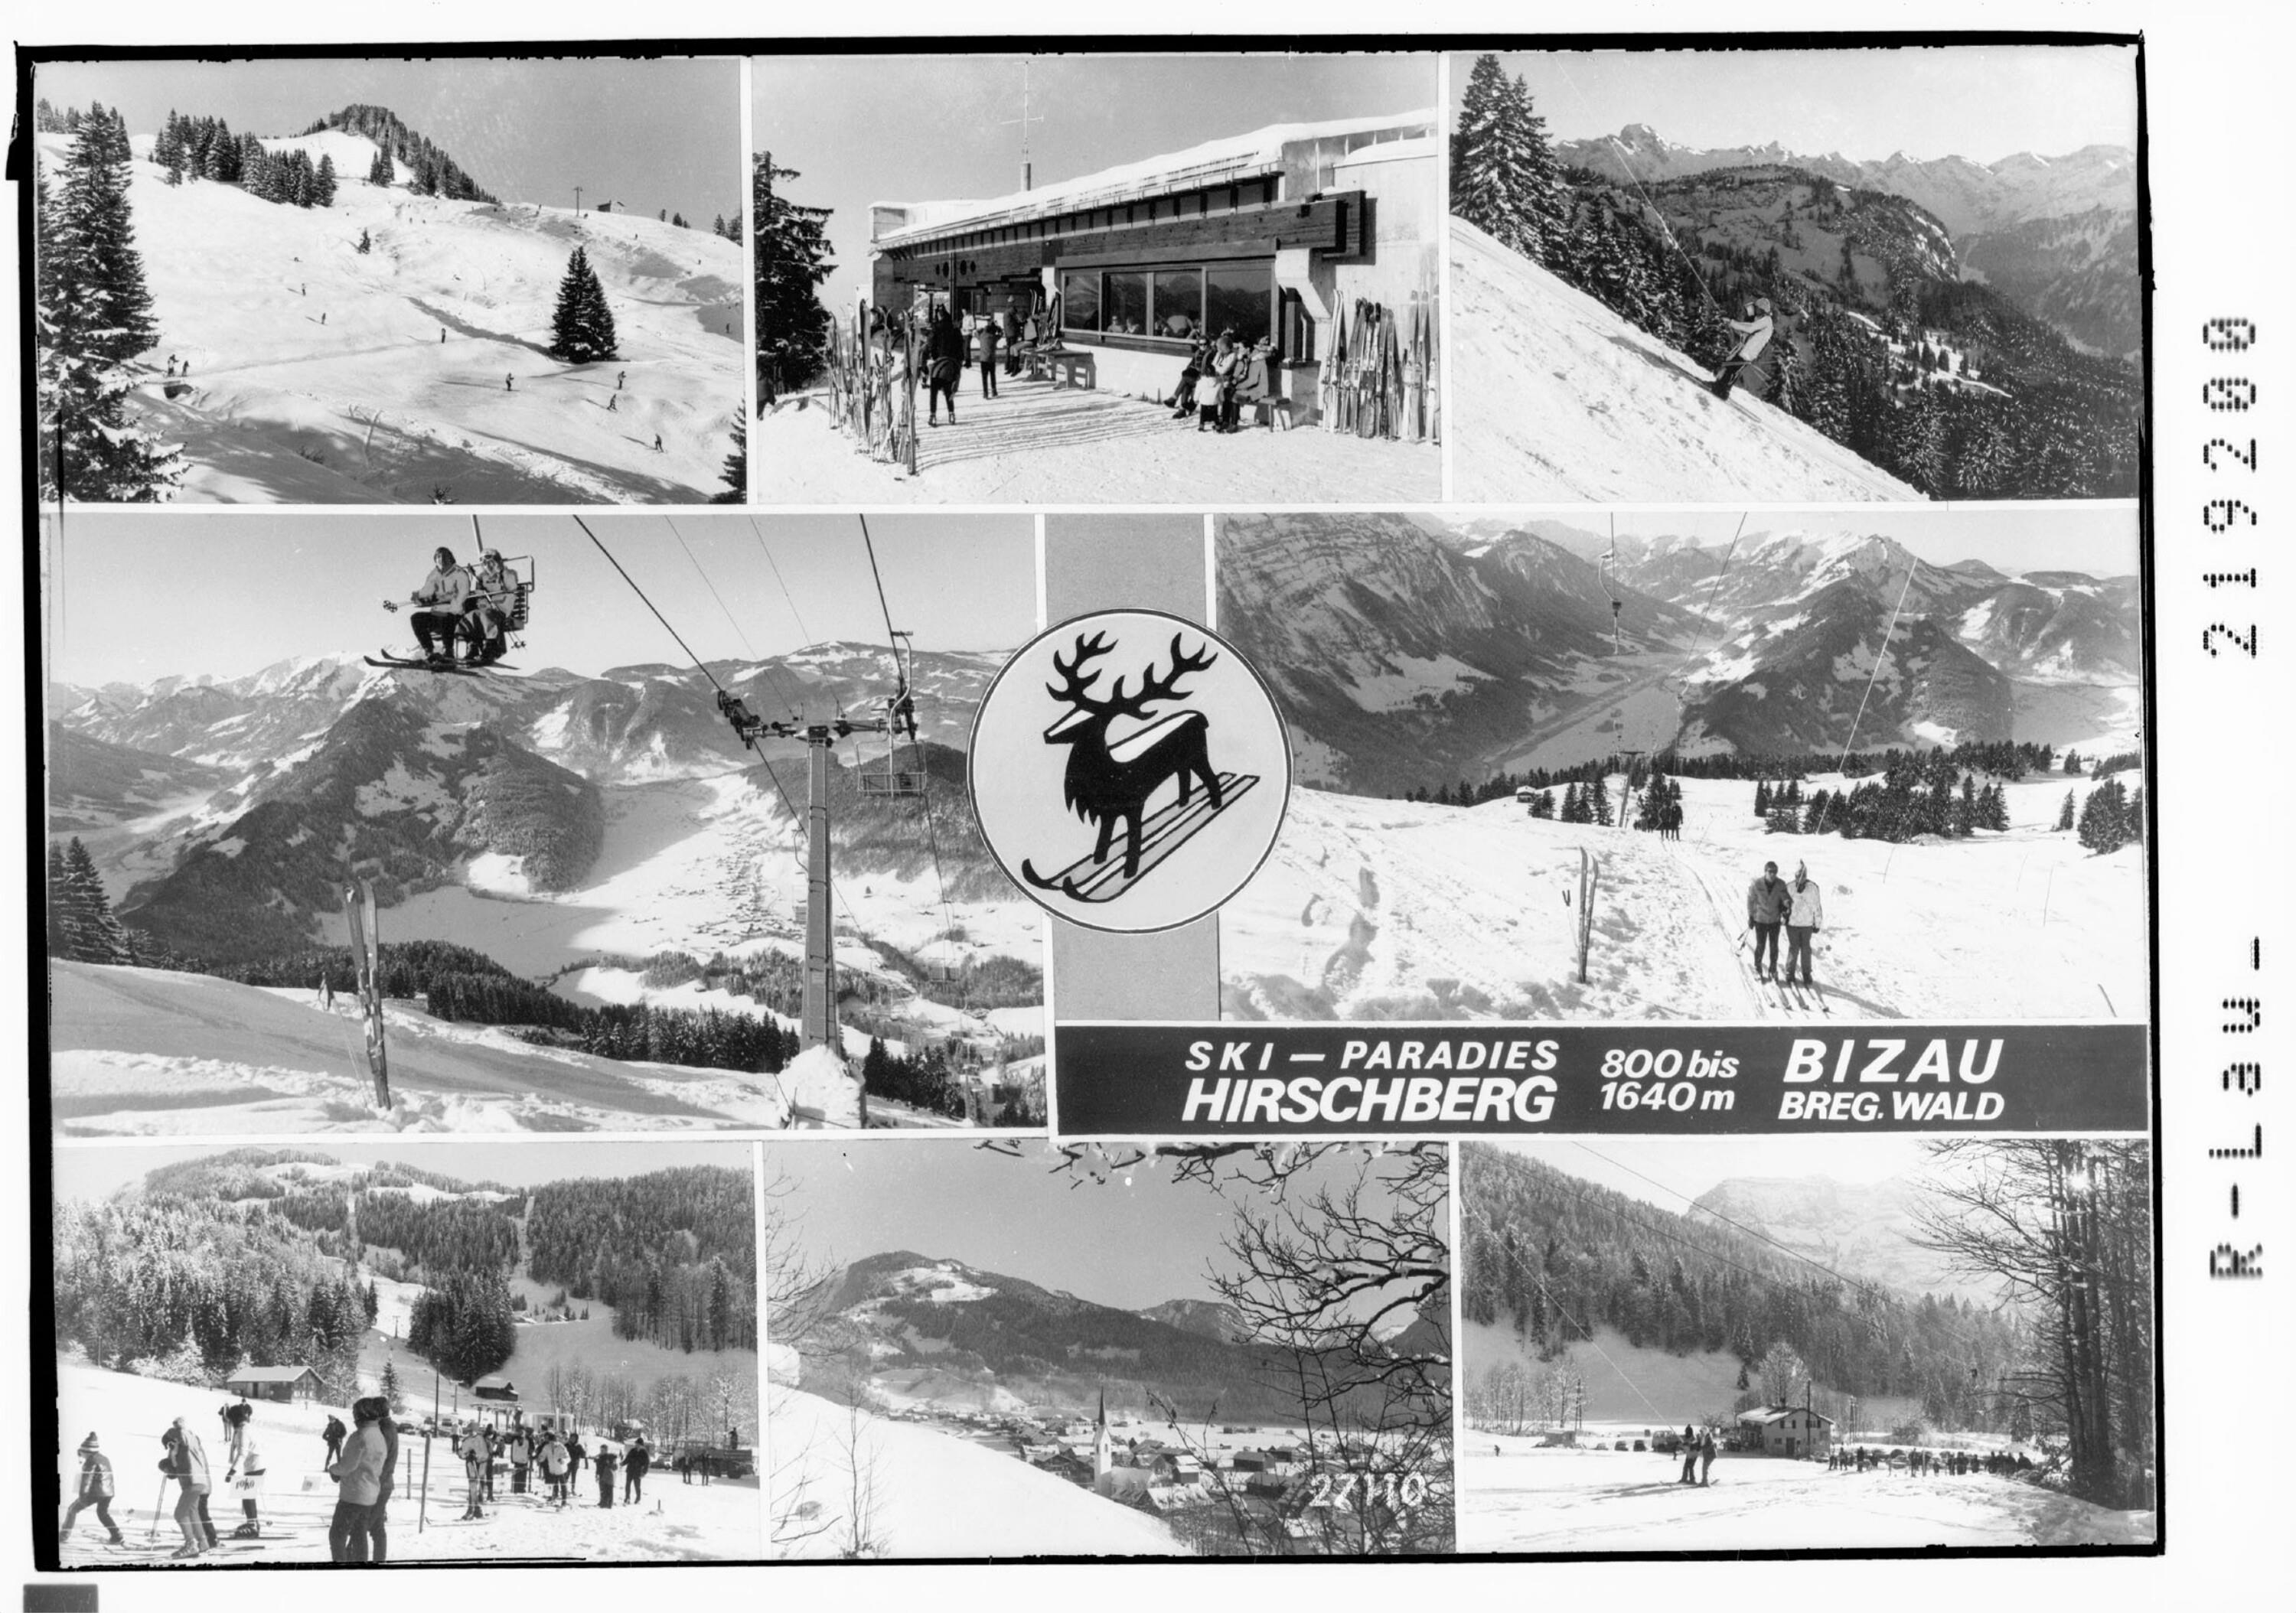 Ski - Paradies Hirschberg 800 bis 1640 m Bizau Bregenzerwald></div>


    <hr>
    <div class=